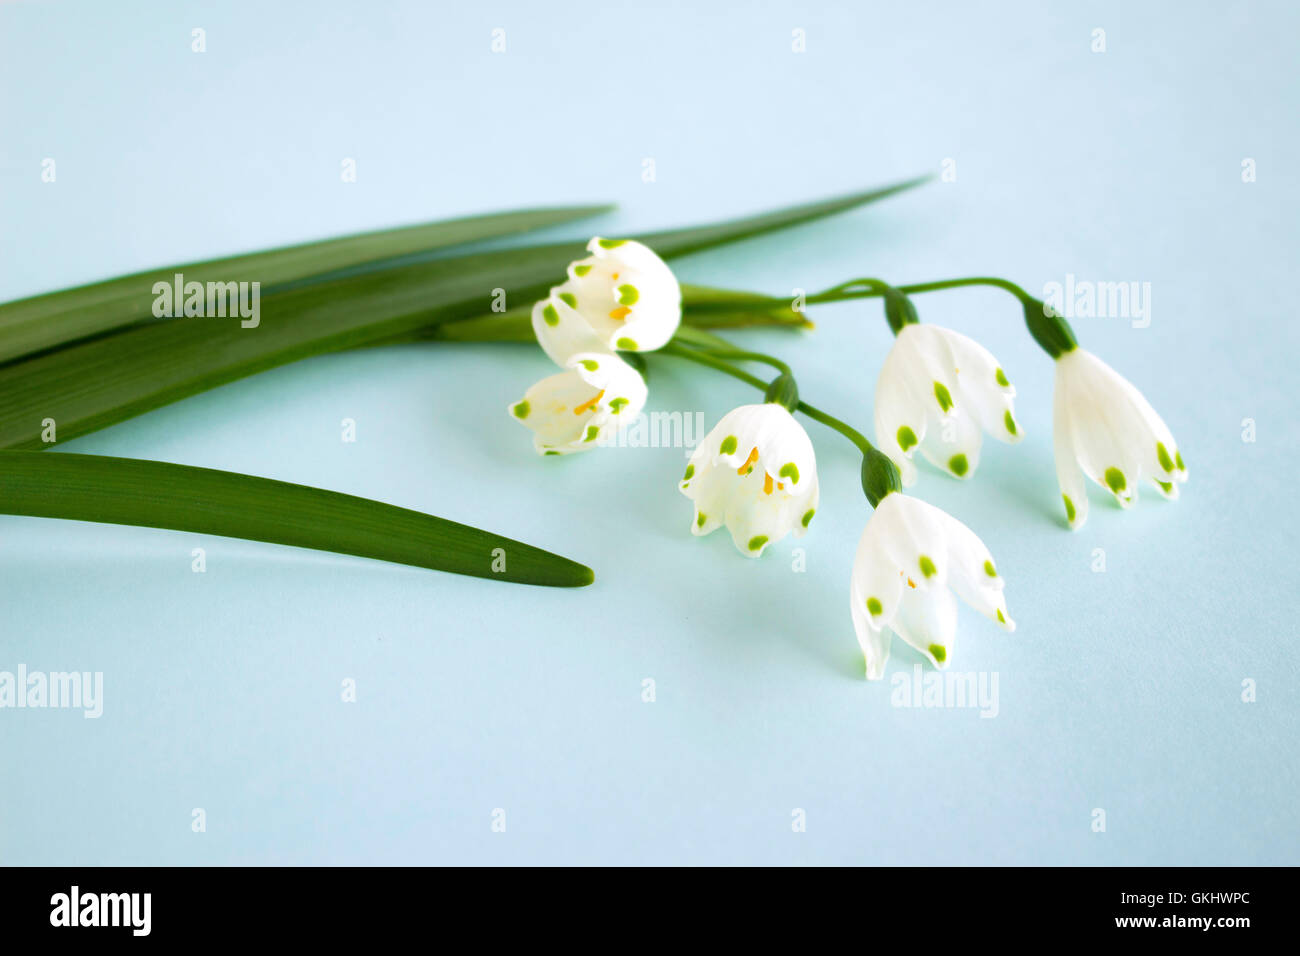 Fiore di foglia immagini e fotografie stock ad alta risoluzione - Alamy